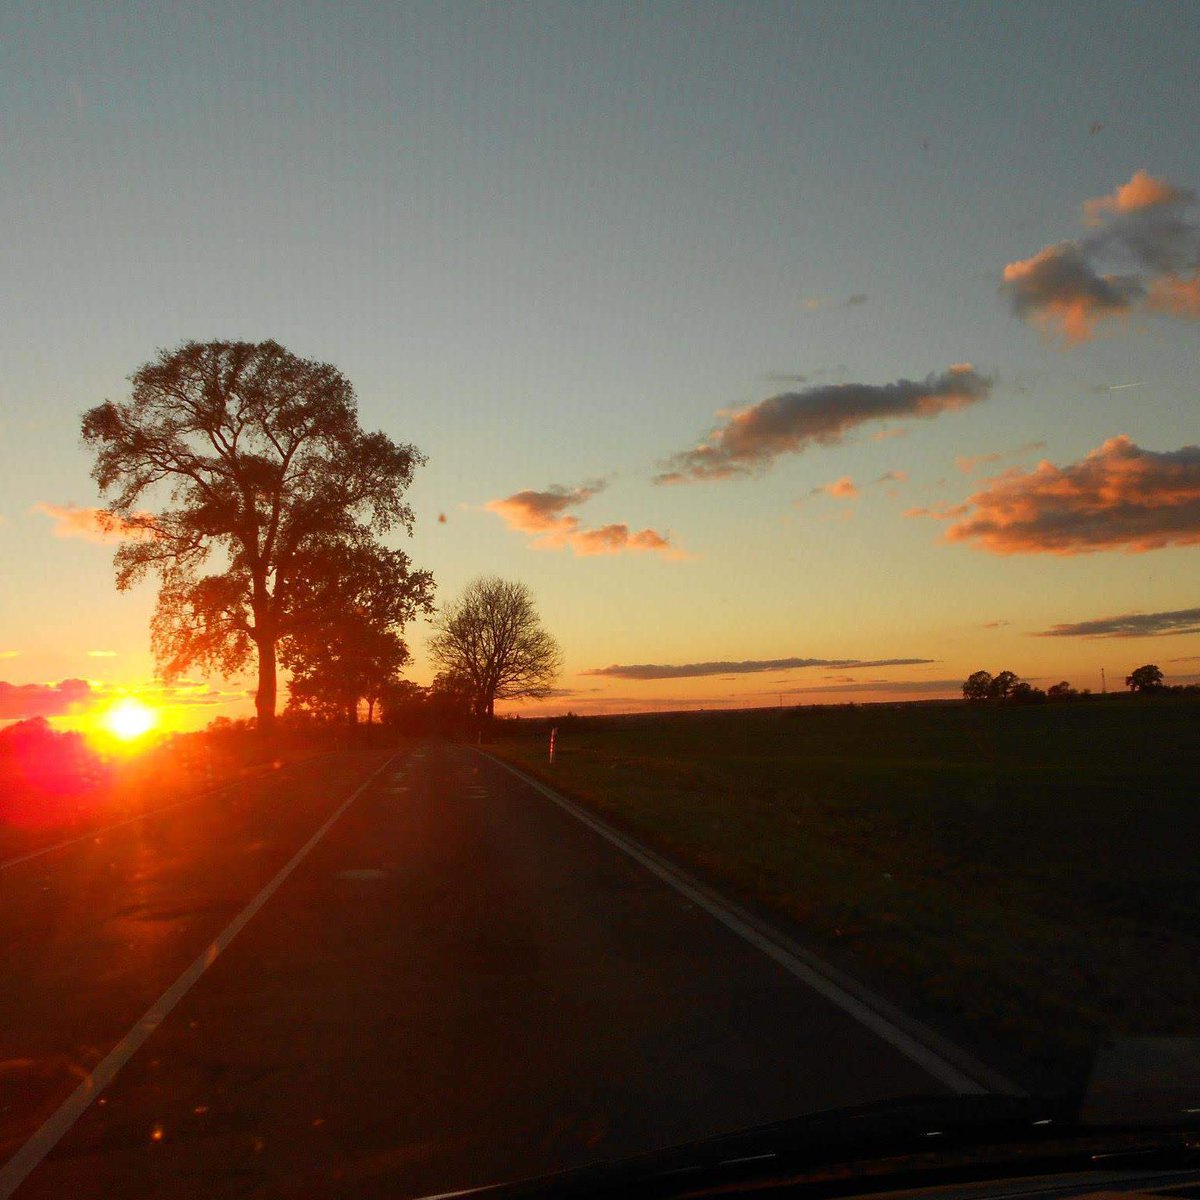 #sonnenuntergang #sunset #sky #brandenburg #germany #roadtrip